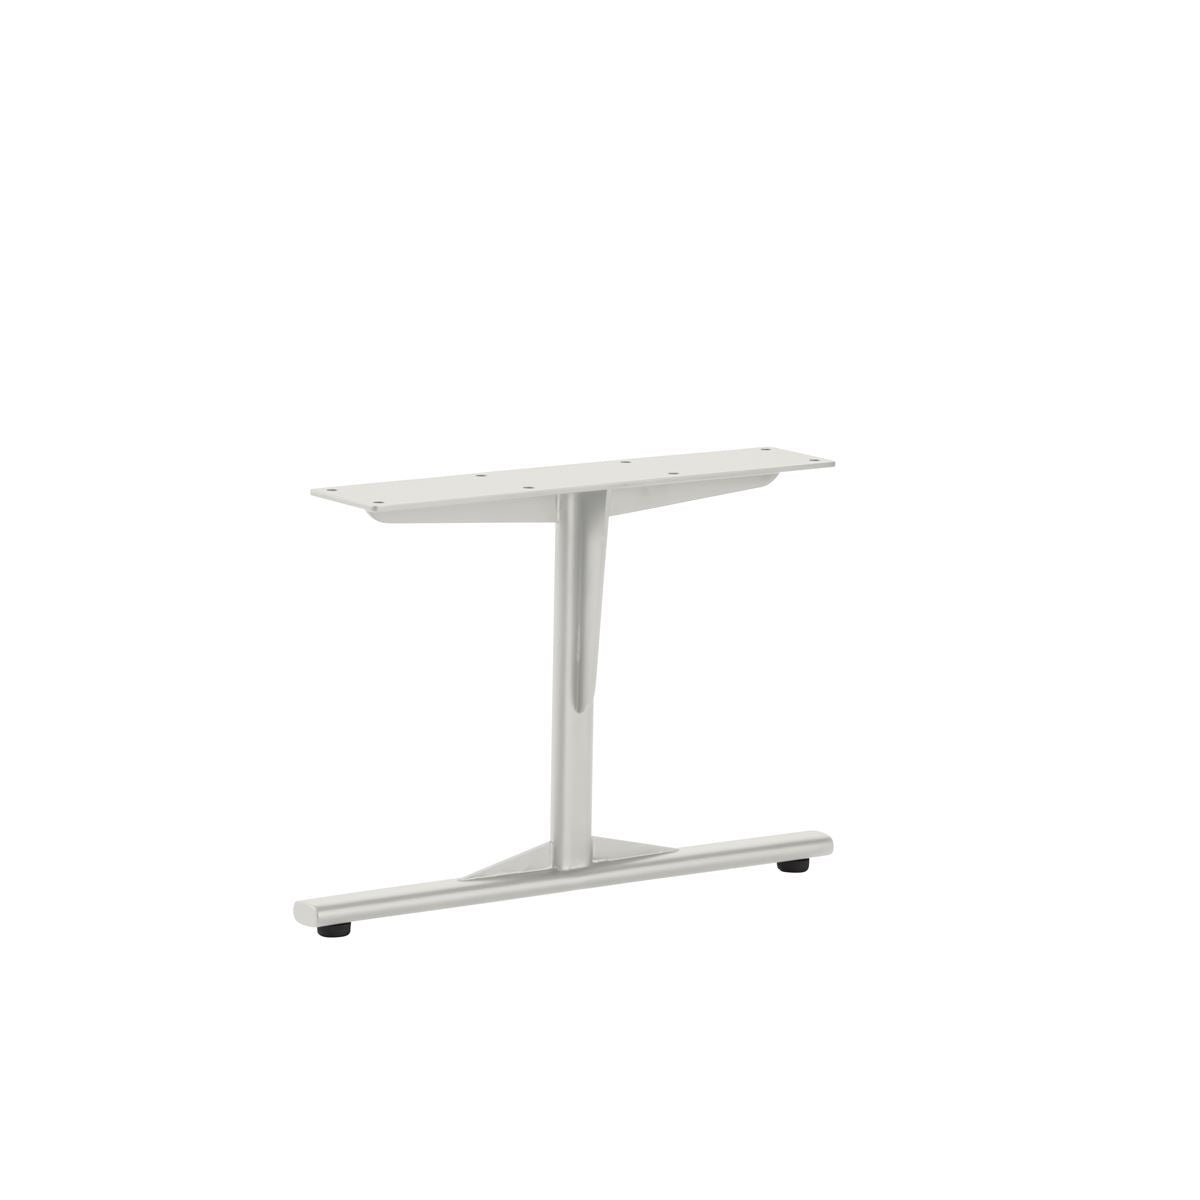 KUUM Living Table W800 × D800 - オーク突板ナチュラル / クーム リビング テーブル